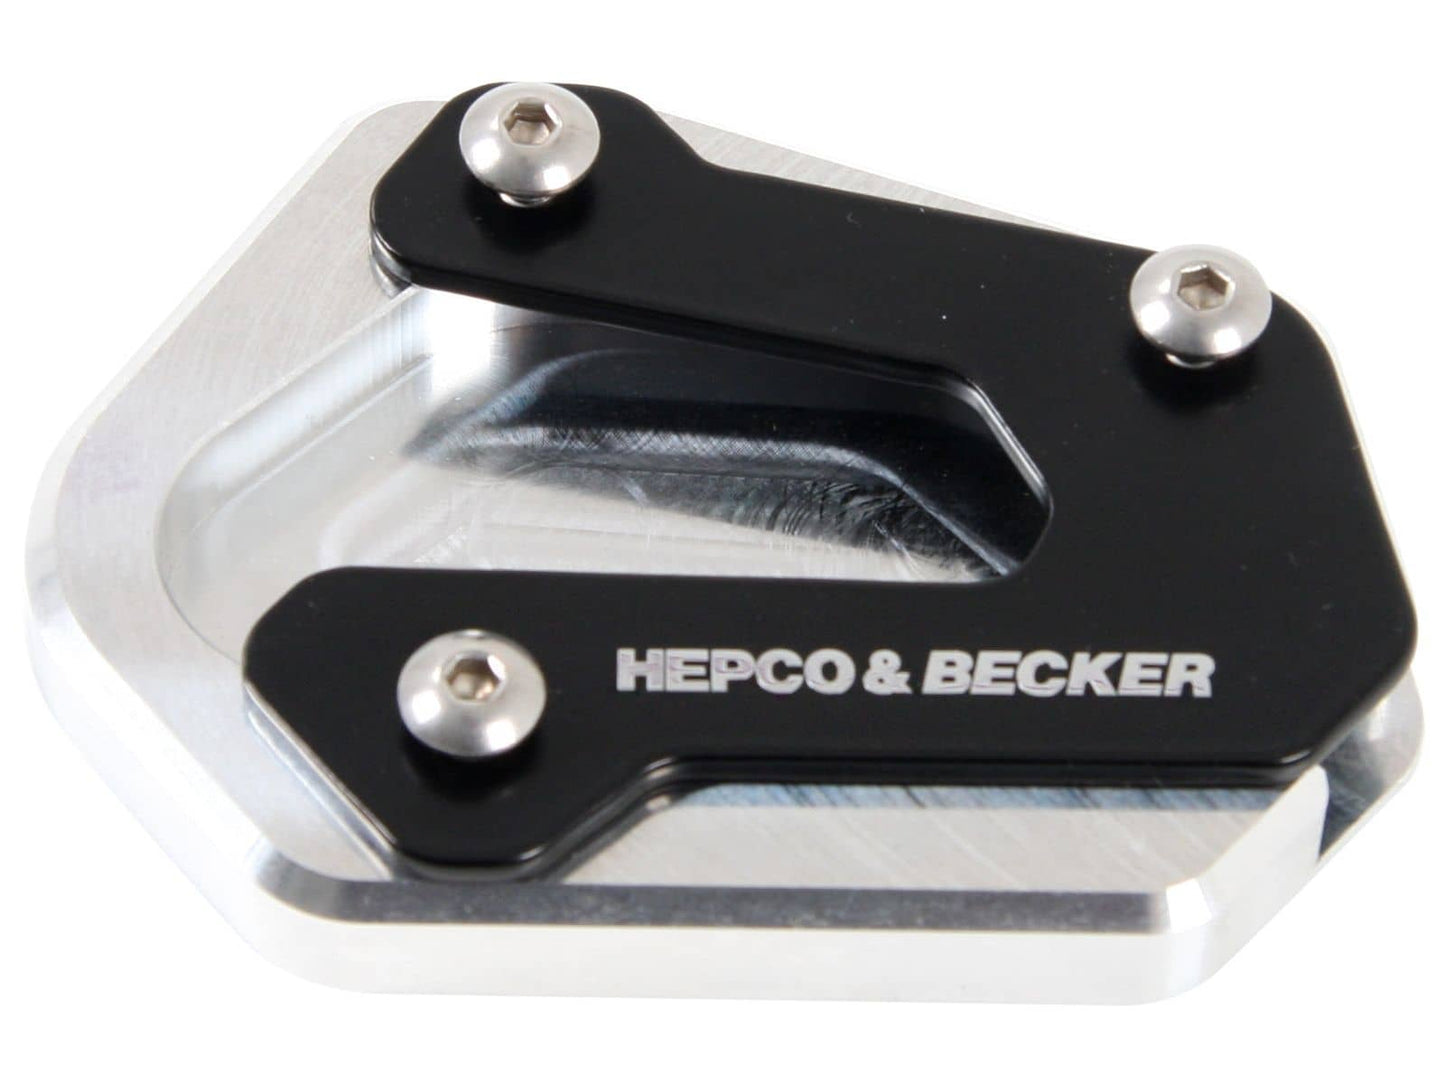 Hepco & Becker Kickstand enlargement